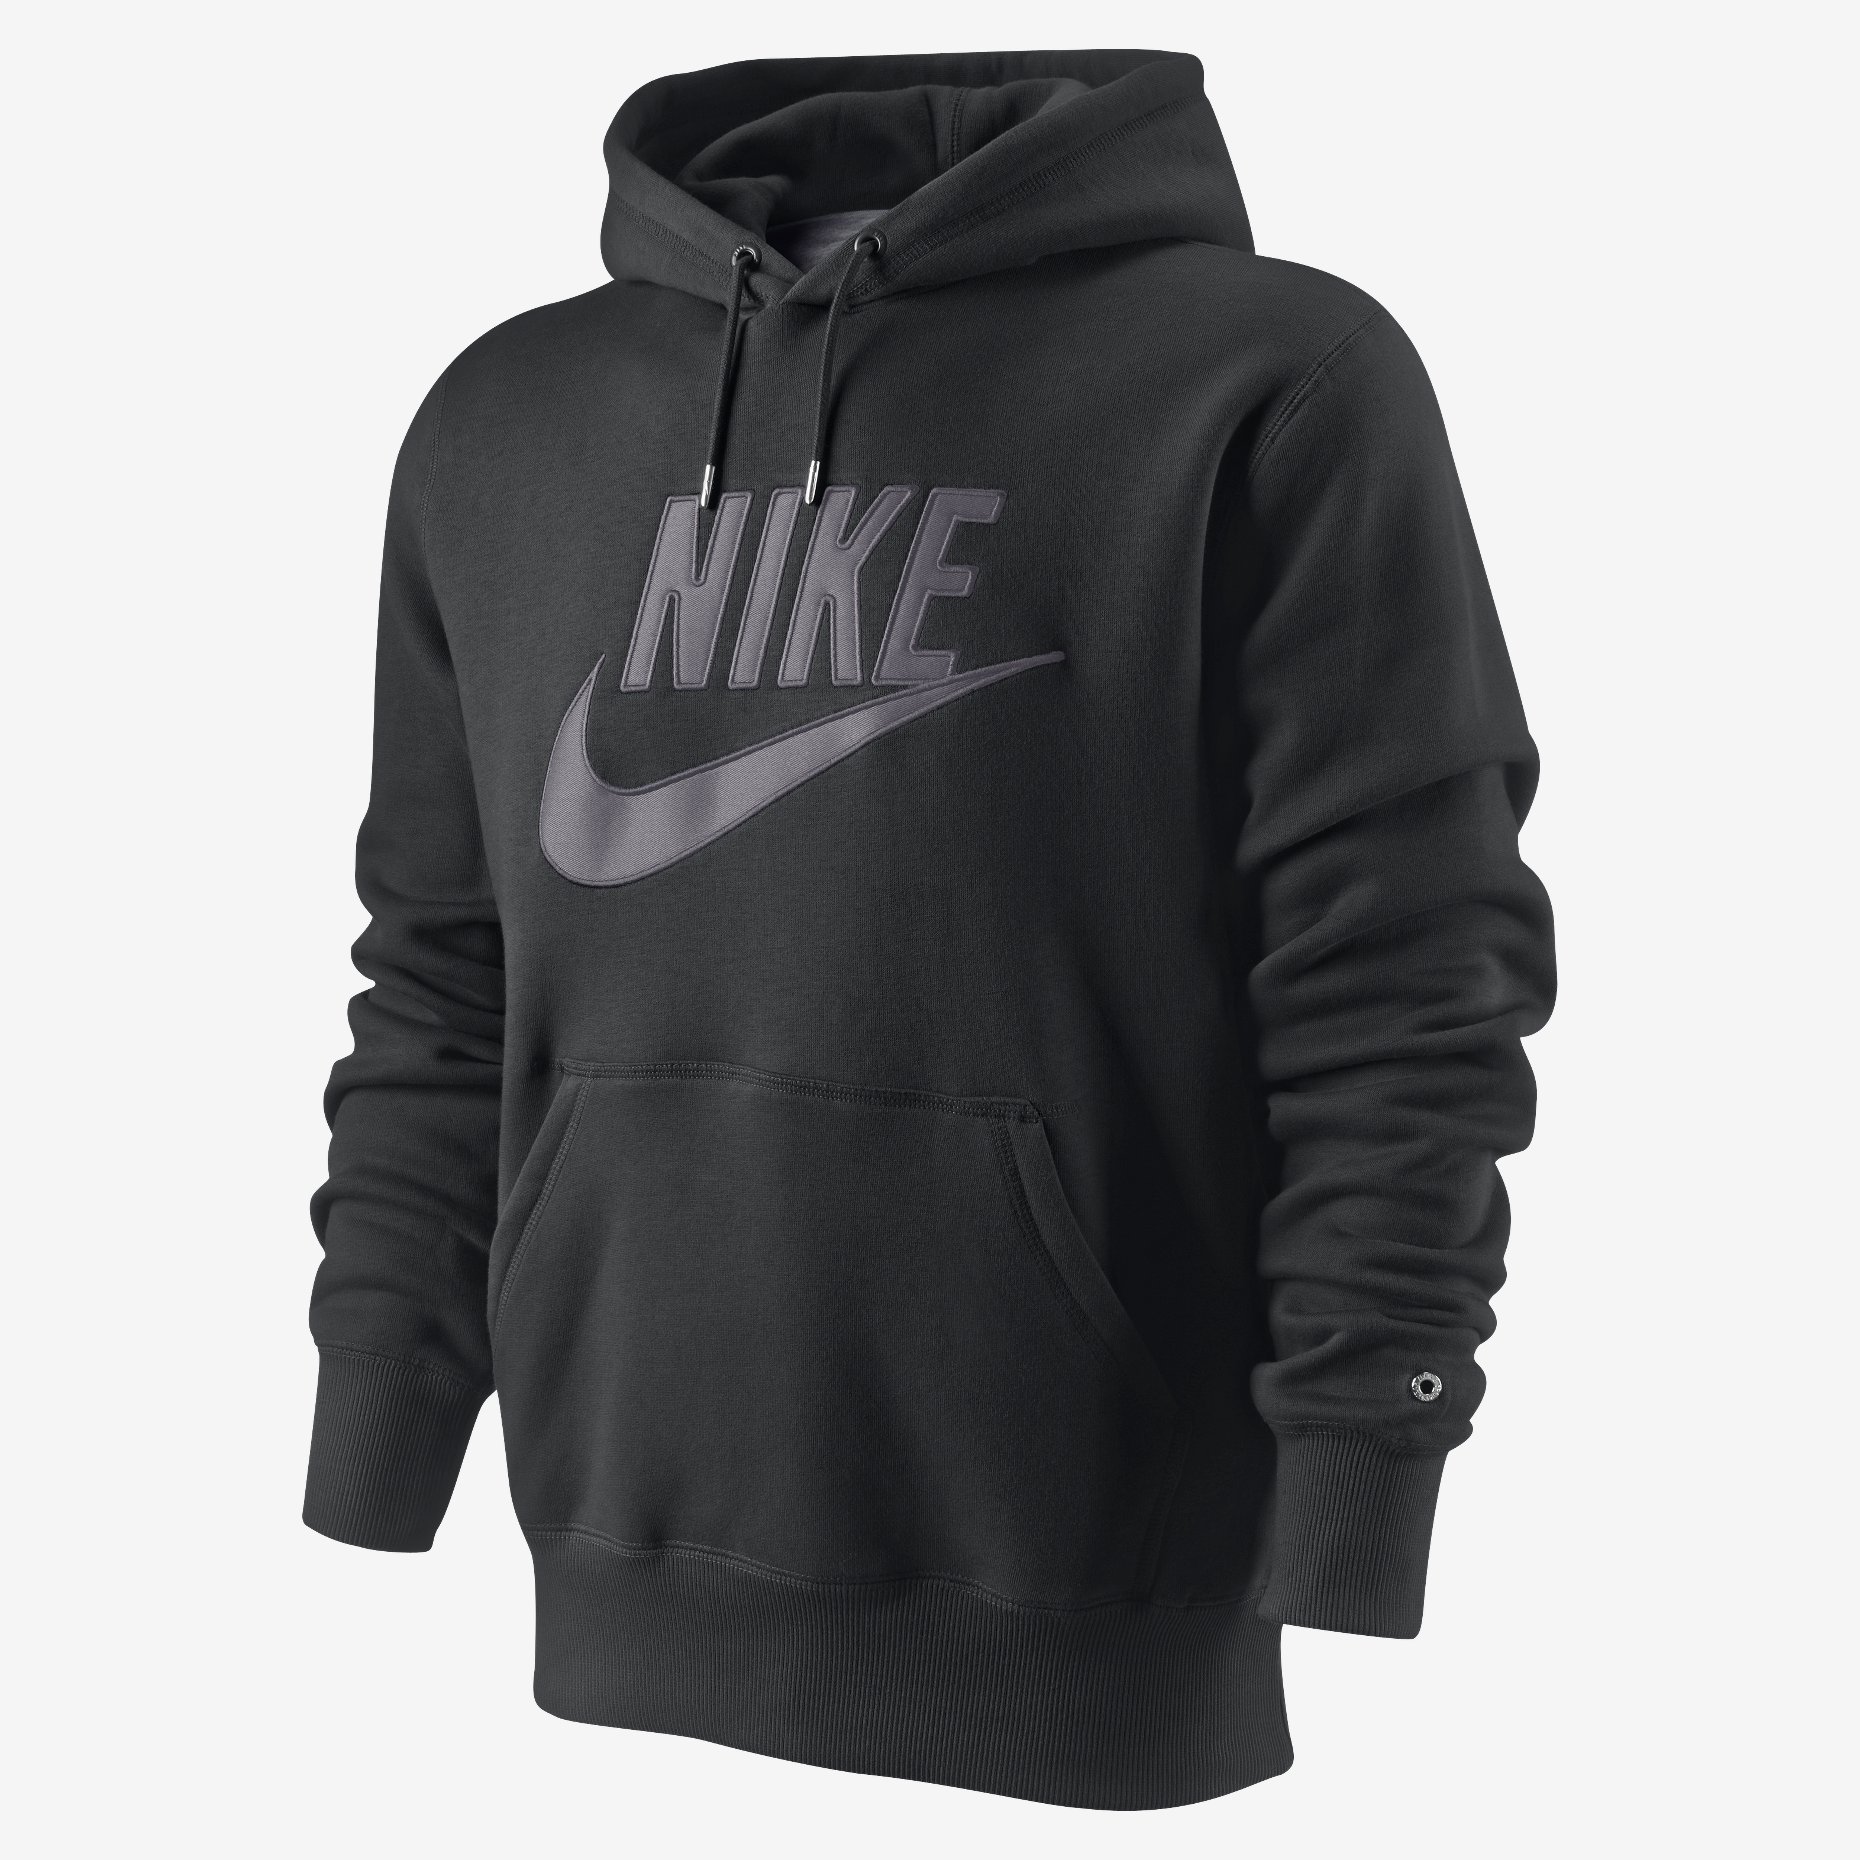 New Nike HBR Mens Hooded Sweatshirt Brushed Fleece Hoodie Black Top S M ...